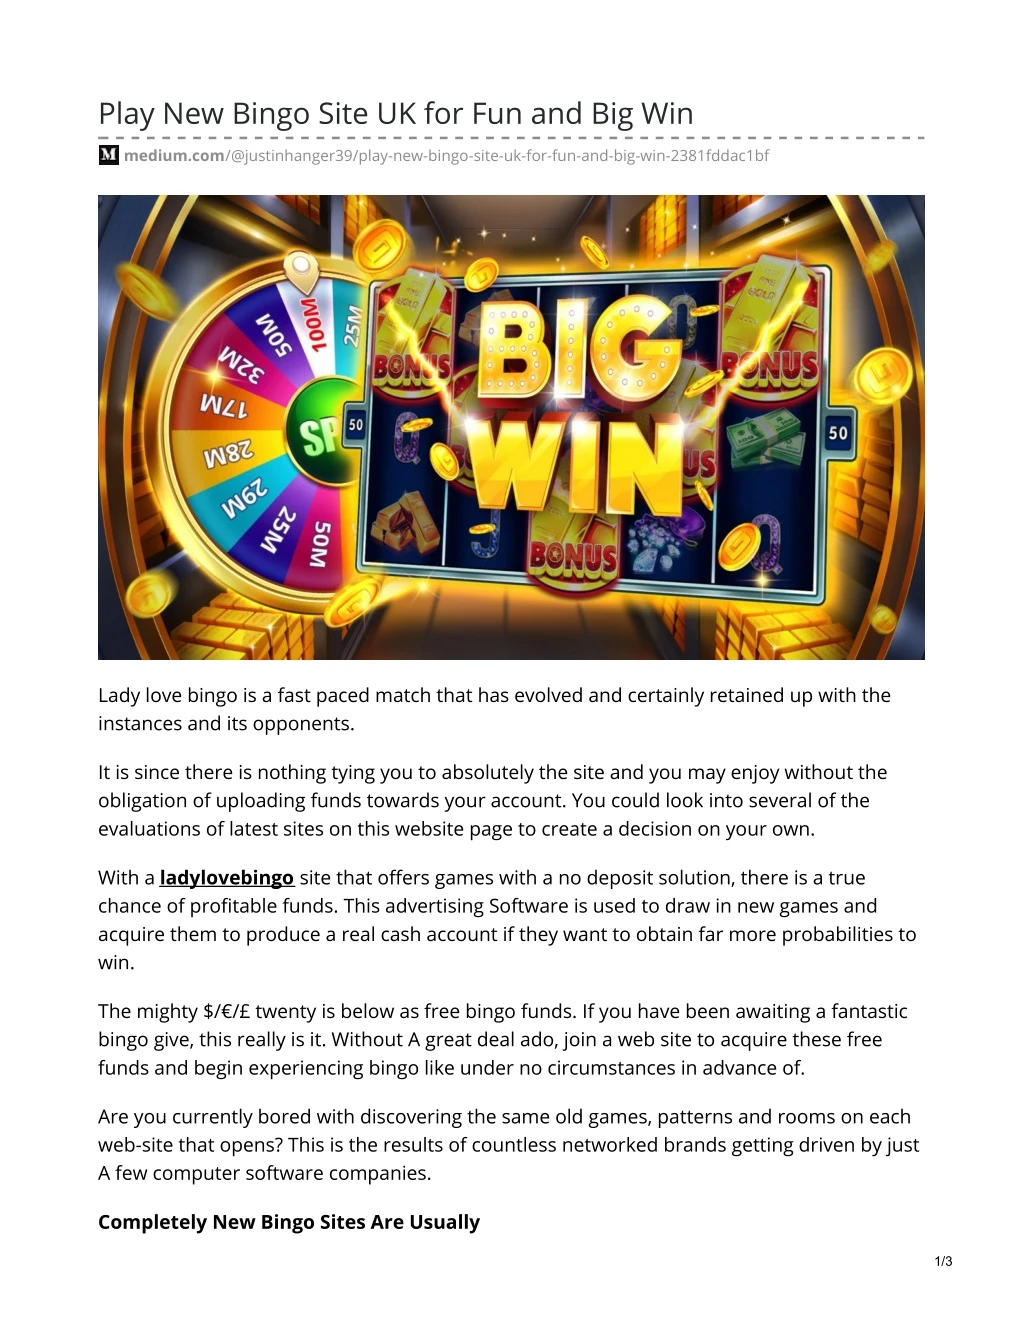 play new bingo site uk for fun and big win